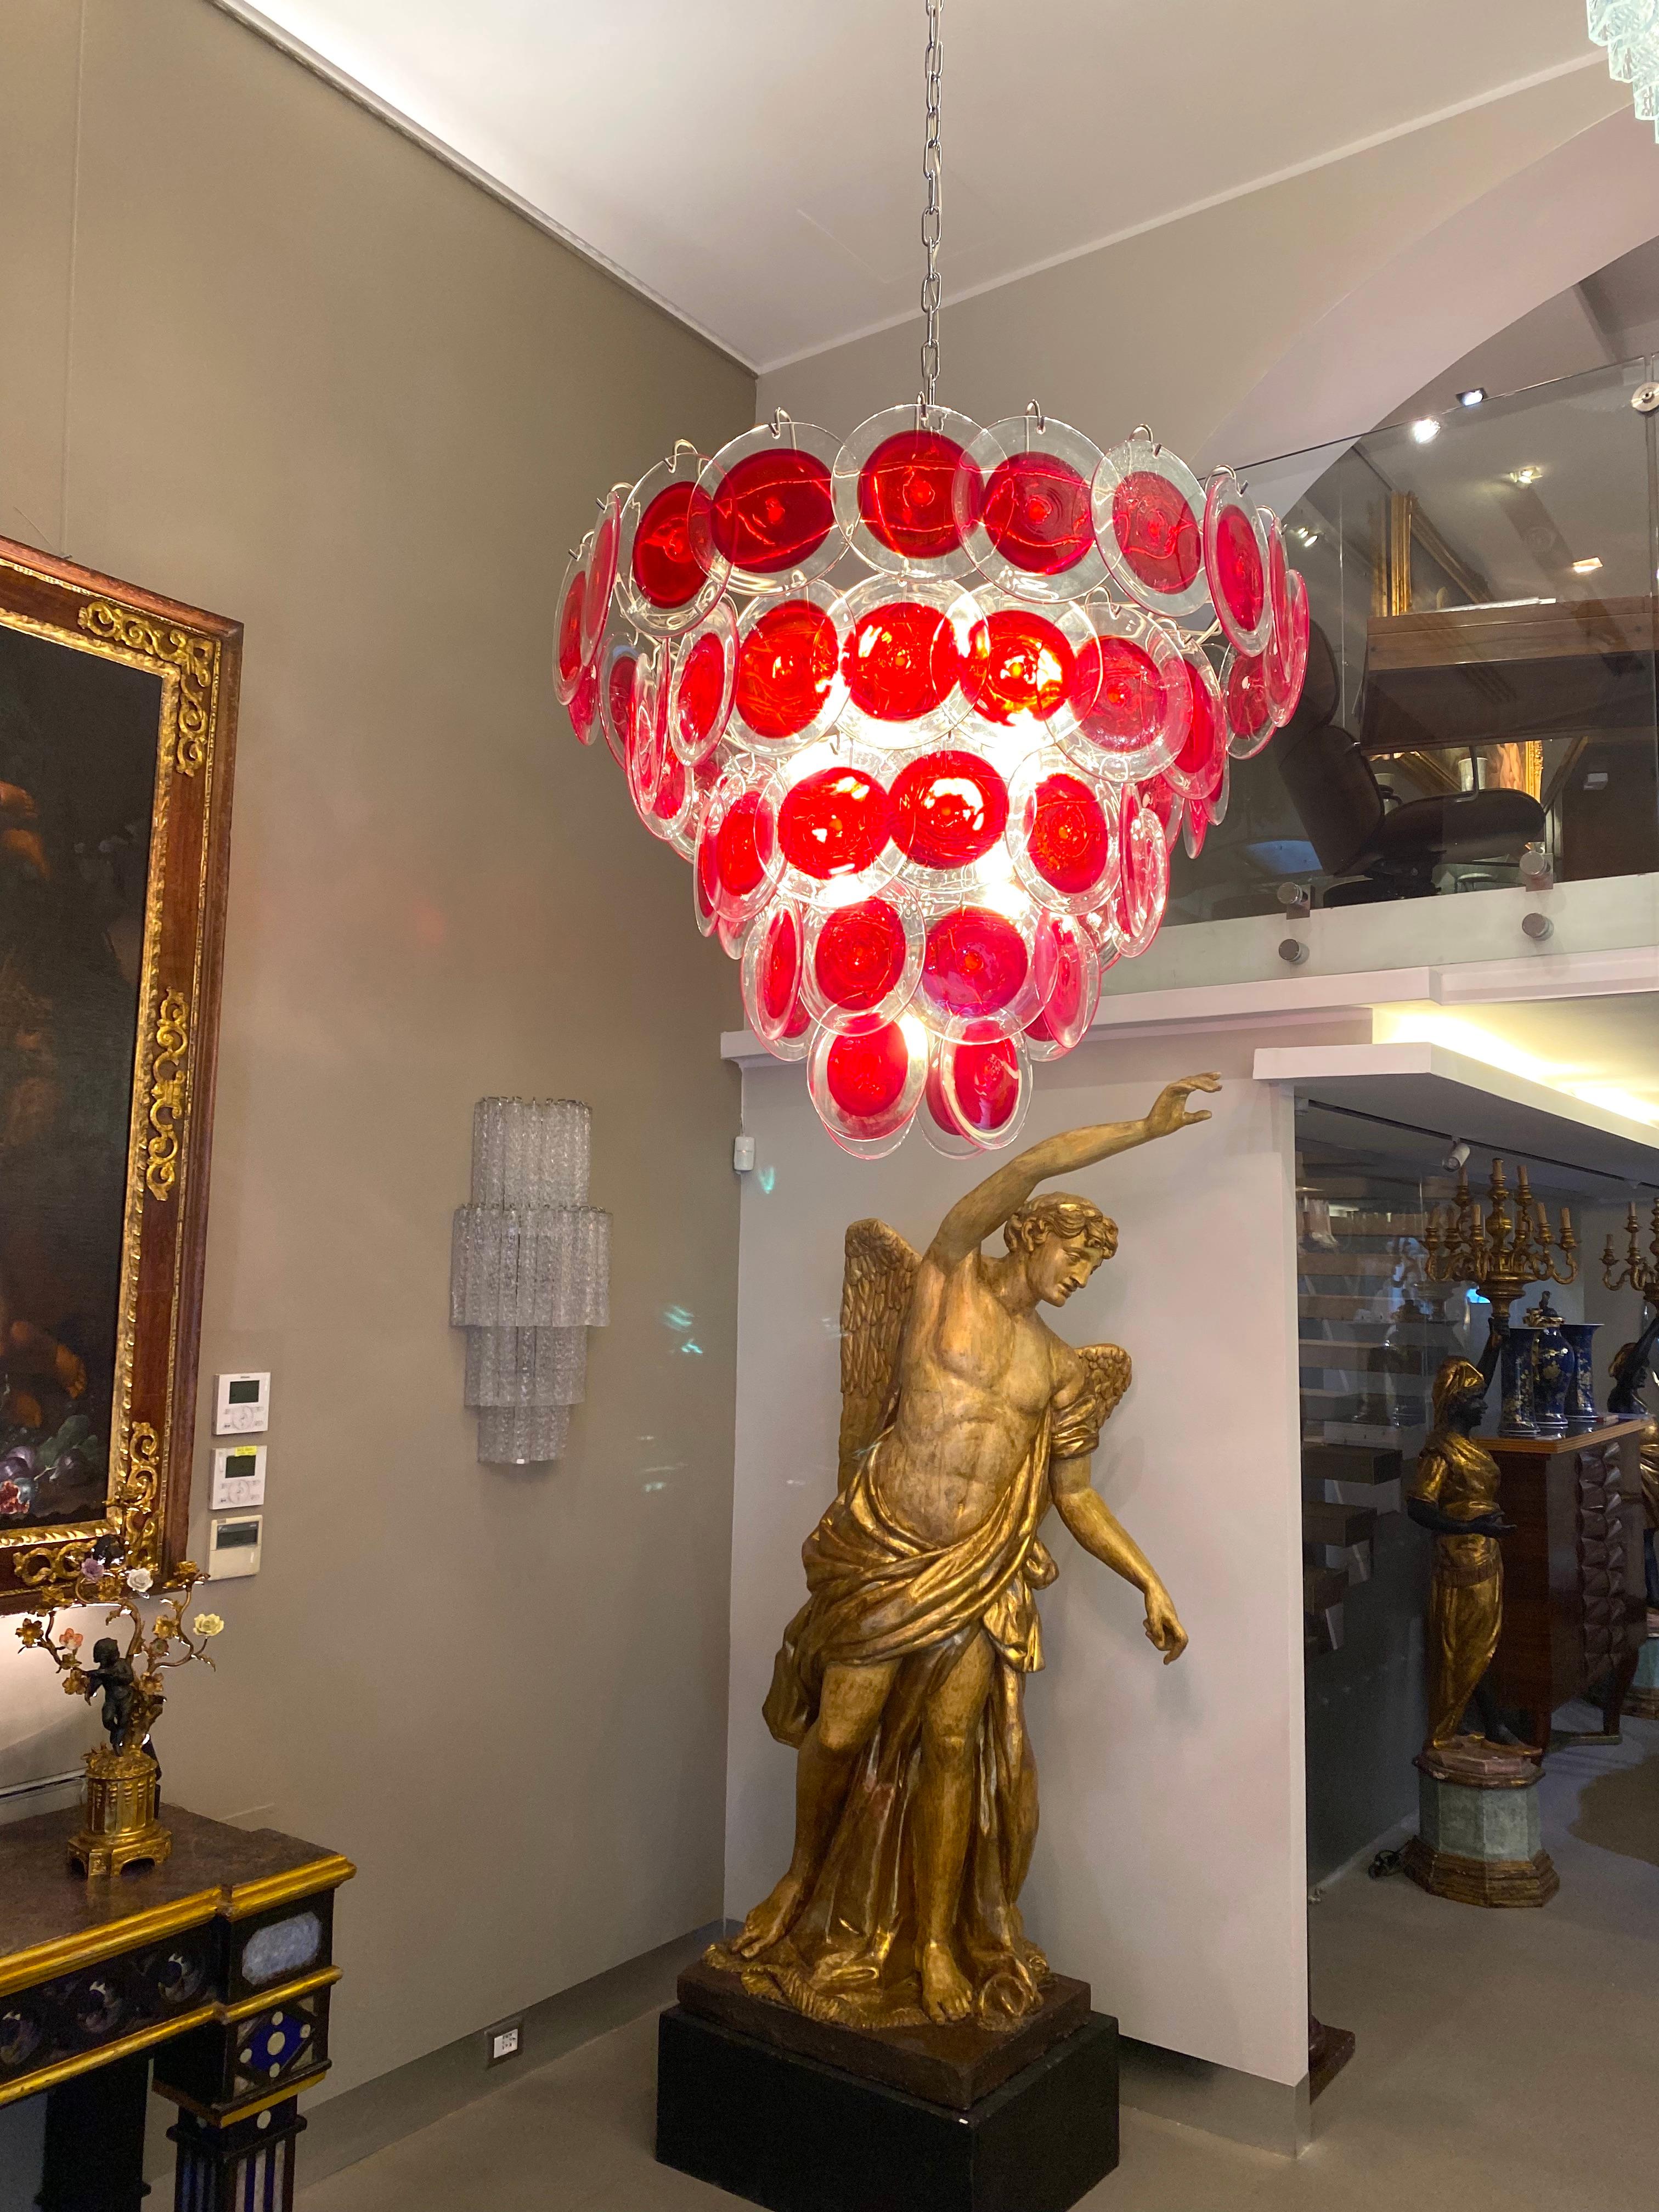 Lustre à disque en verre Murano rouge de forme ronde. 
Chaque lustre est composé de 50 disques rouges en verre précieux de Murano, disposés sur cinq niveaux.
La personnalisation est possible dans différentes tailles, finitions et couleurs de verre.
